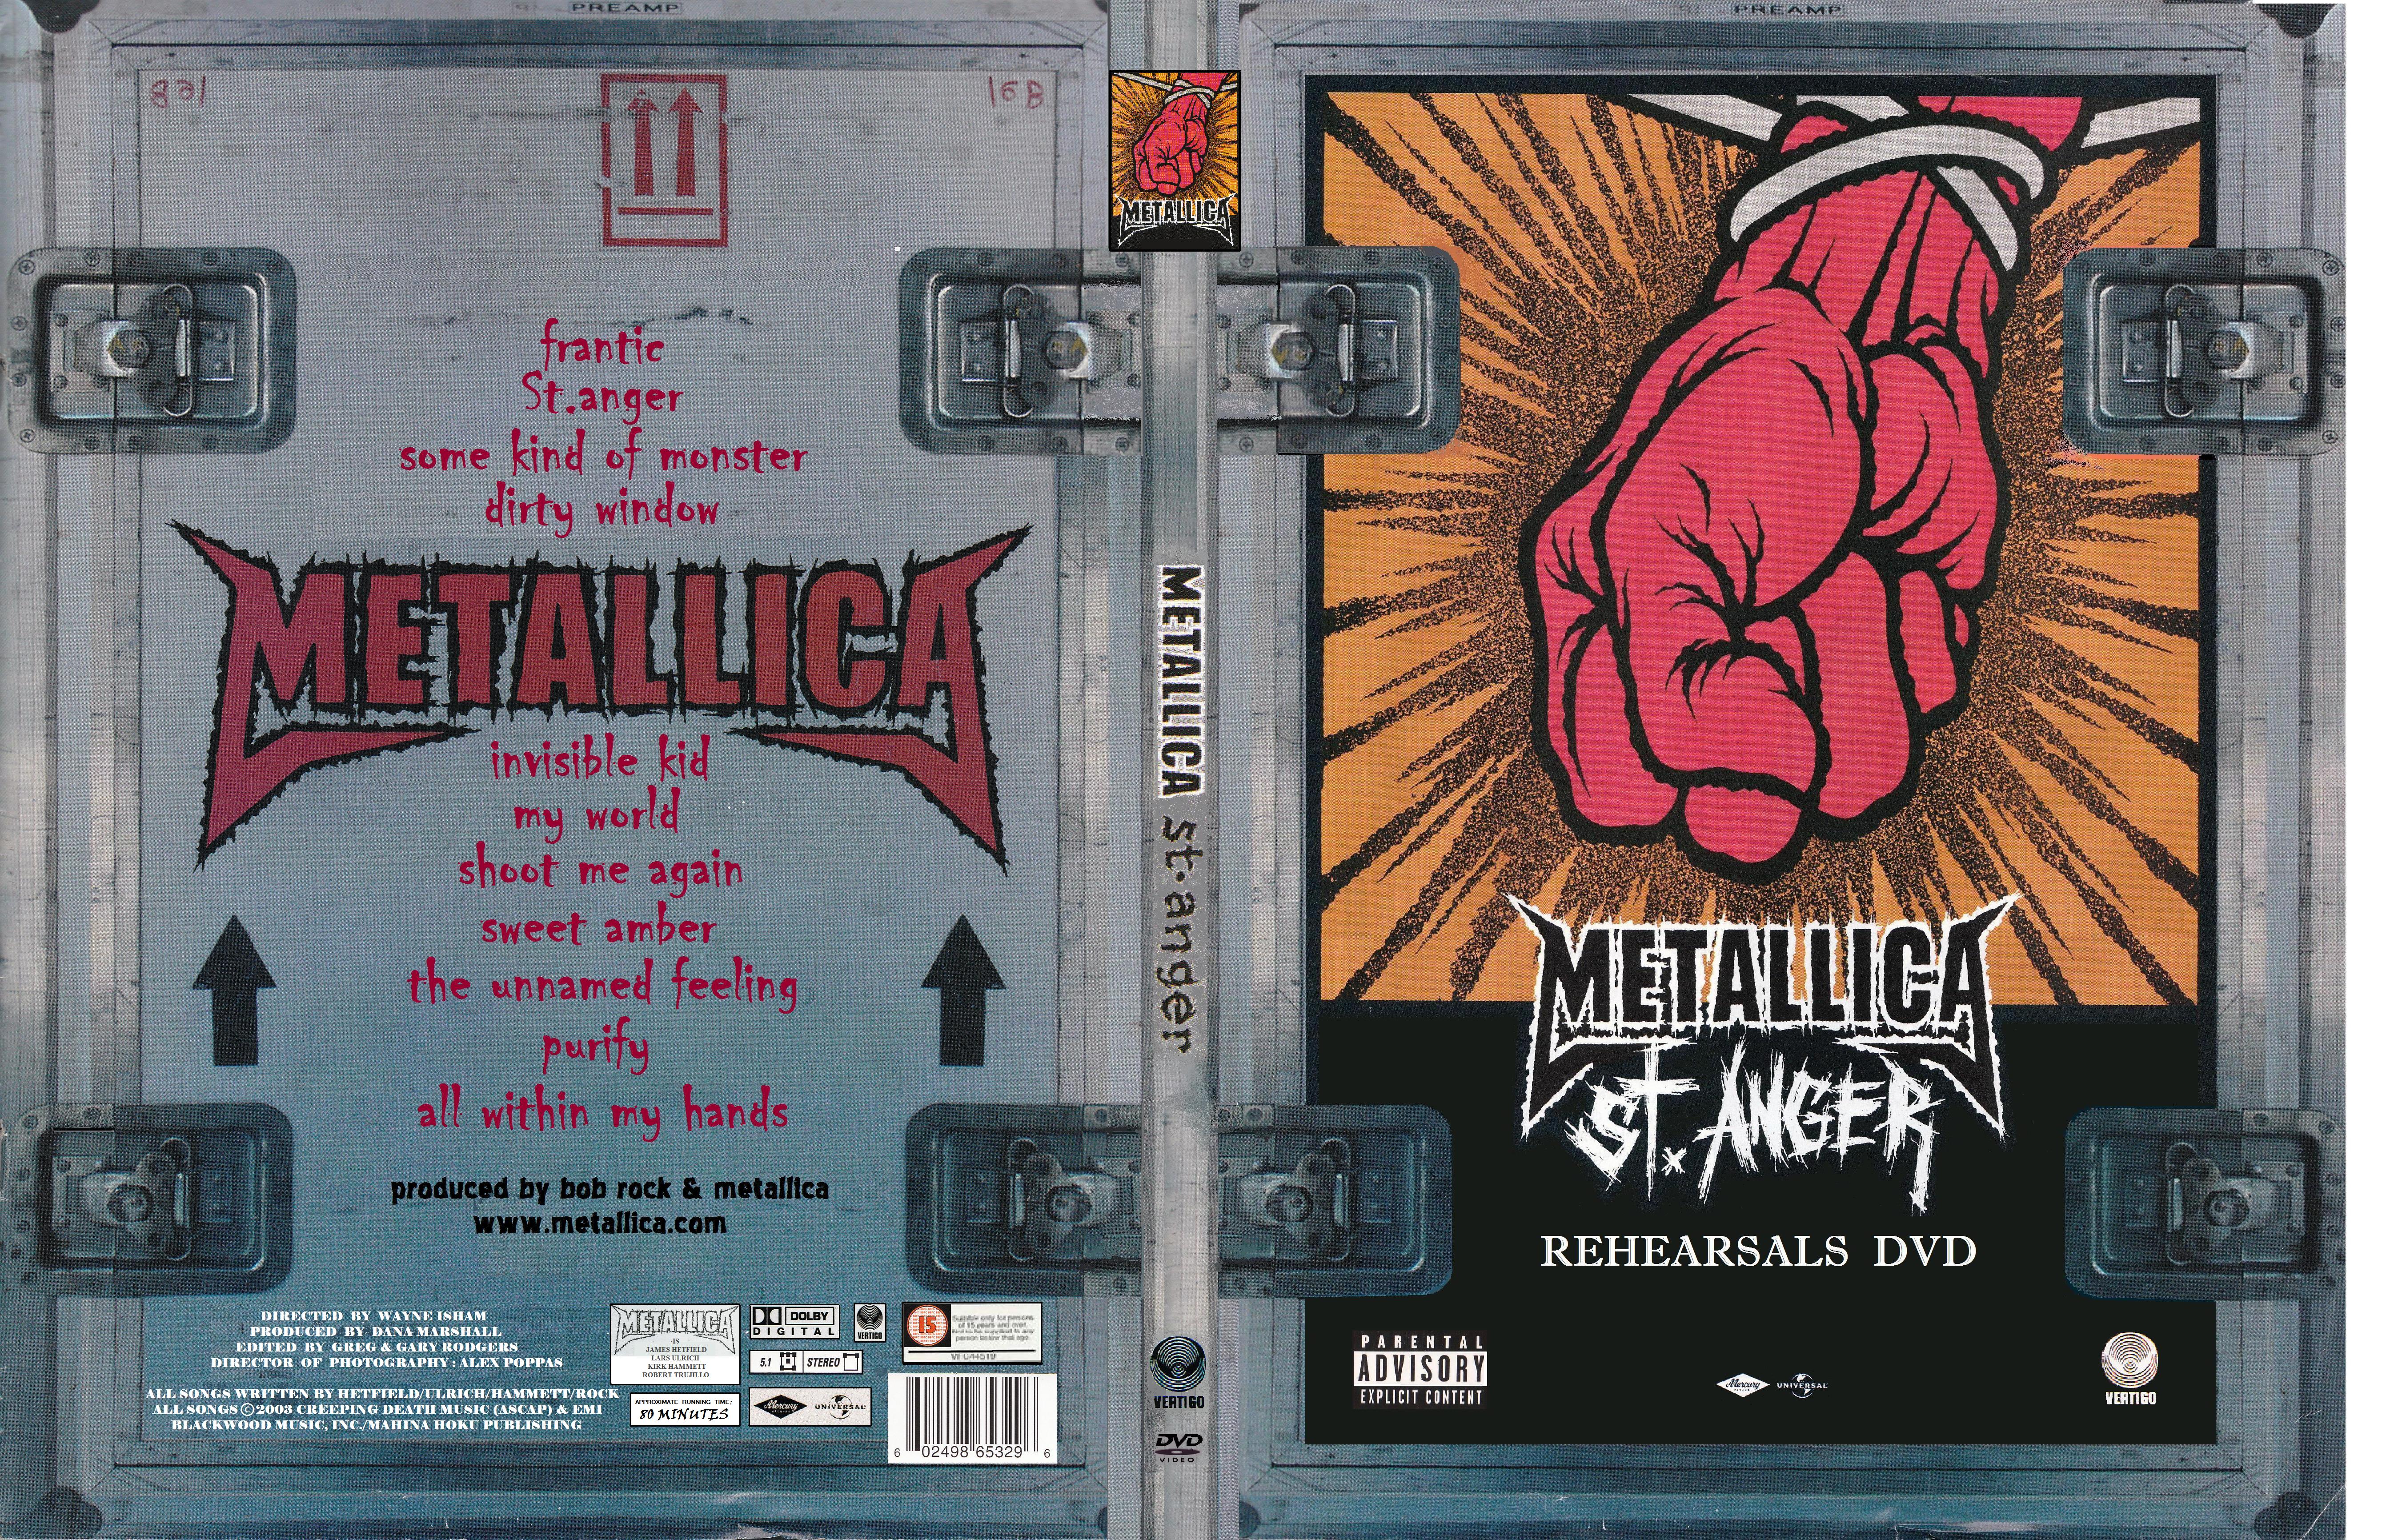 Jaquette DVD Metallica St Anger